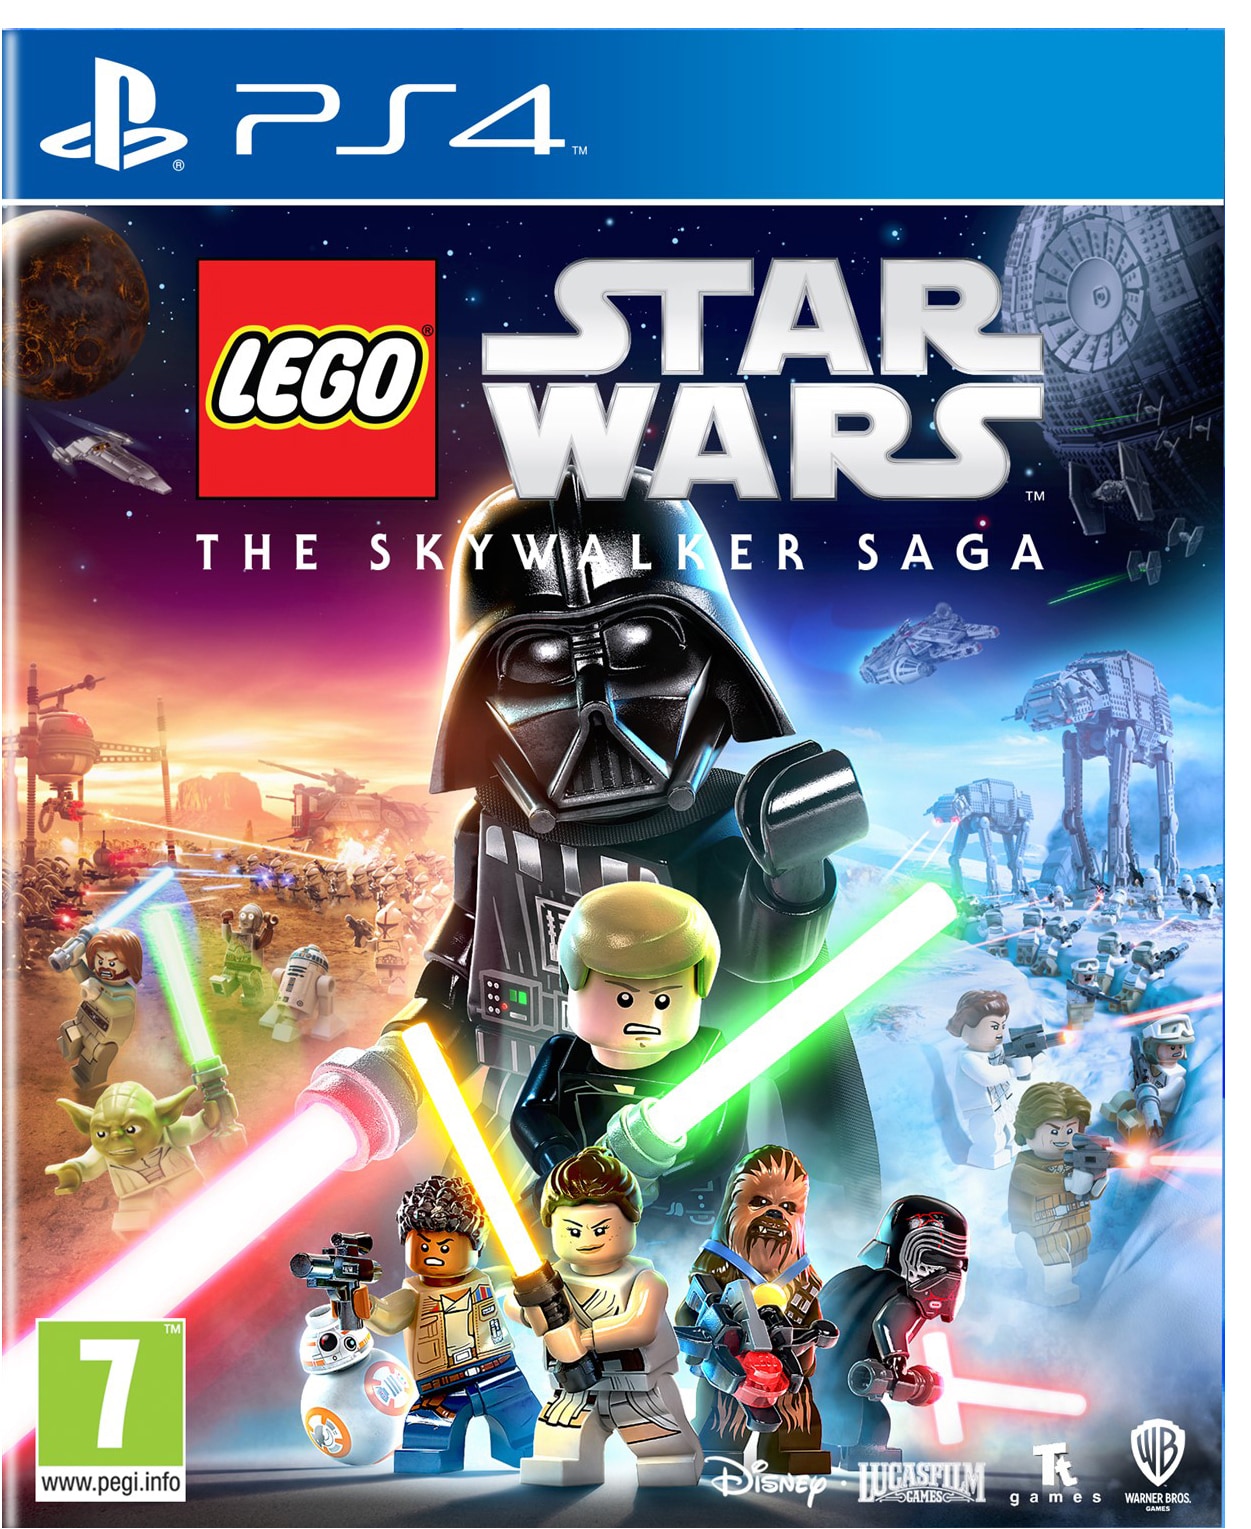 Behandling øve sig øge LEGO Star Wars The Skywalker Saga Classic Edition (PS4) inkl. PS5-version |  Elgiganten